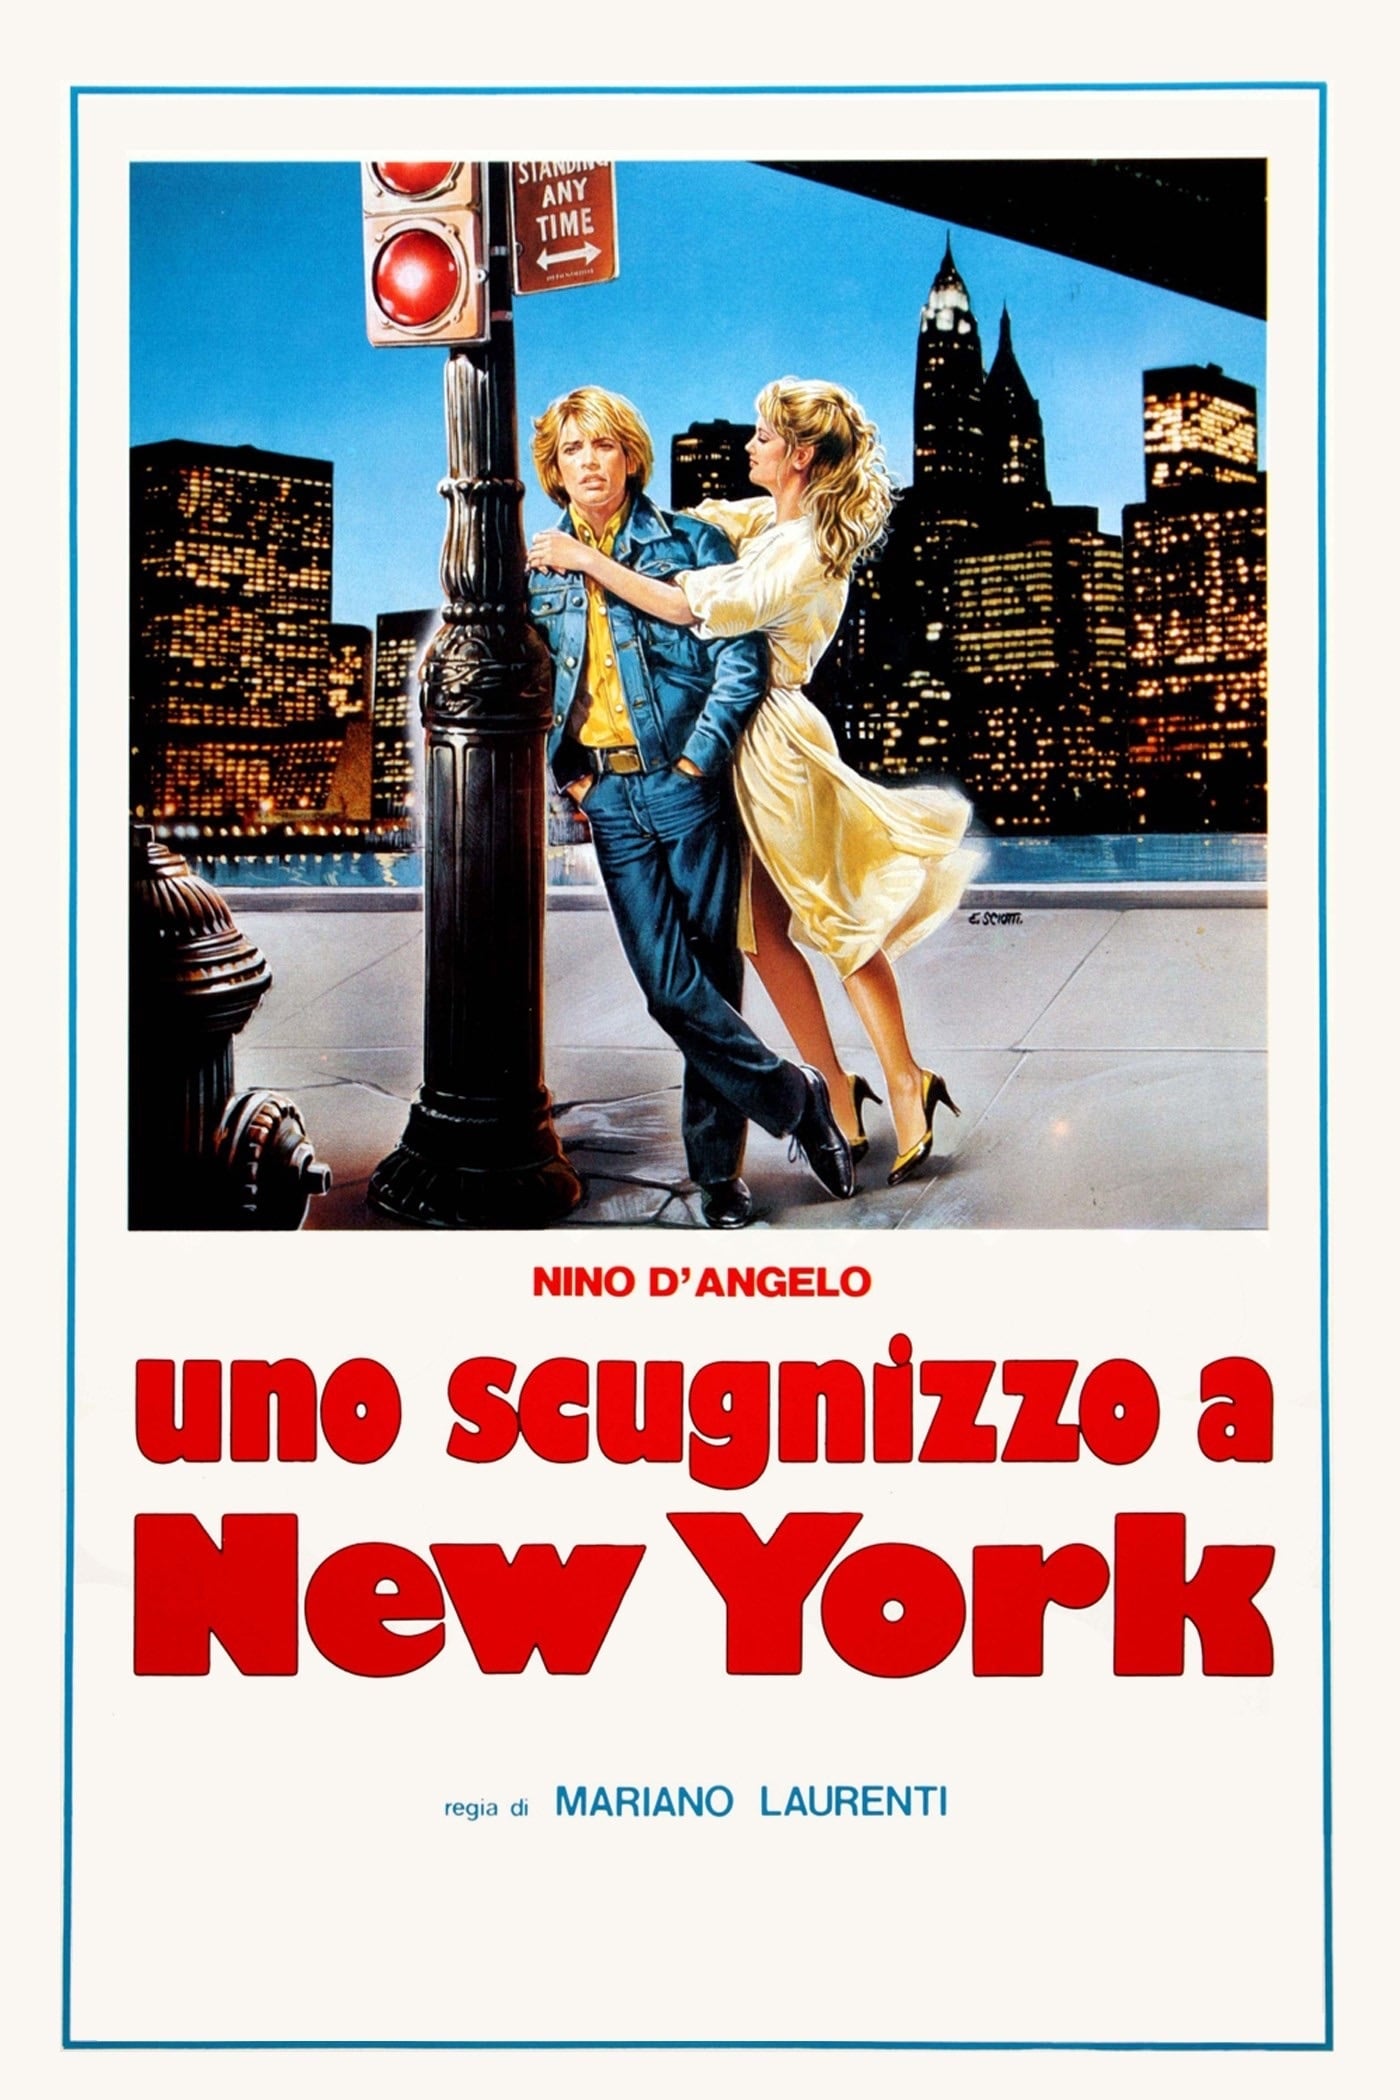 Neapolitan Boy in New York (1984)